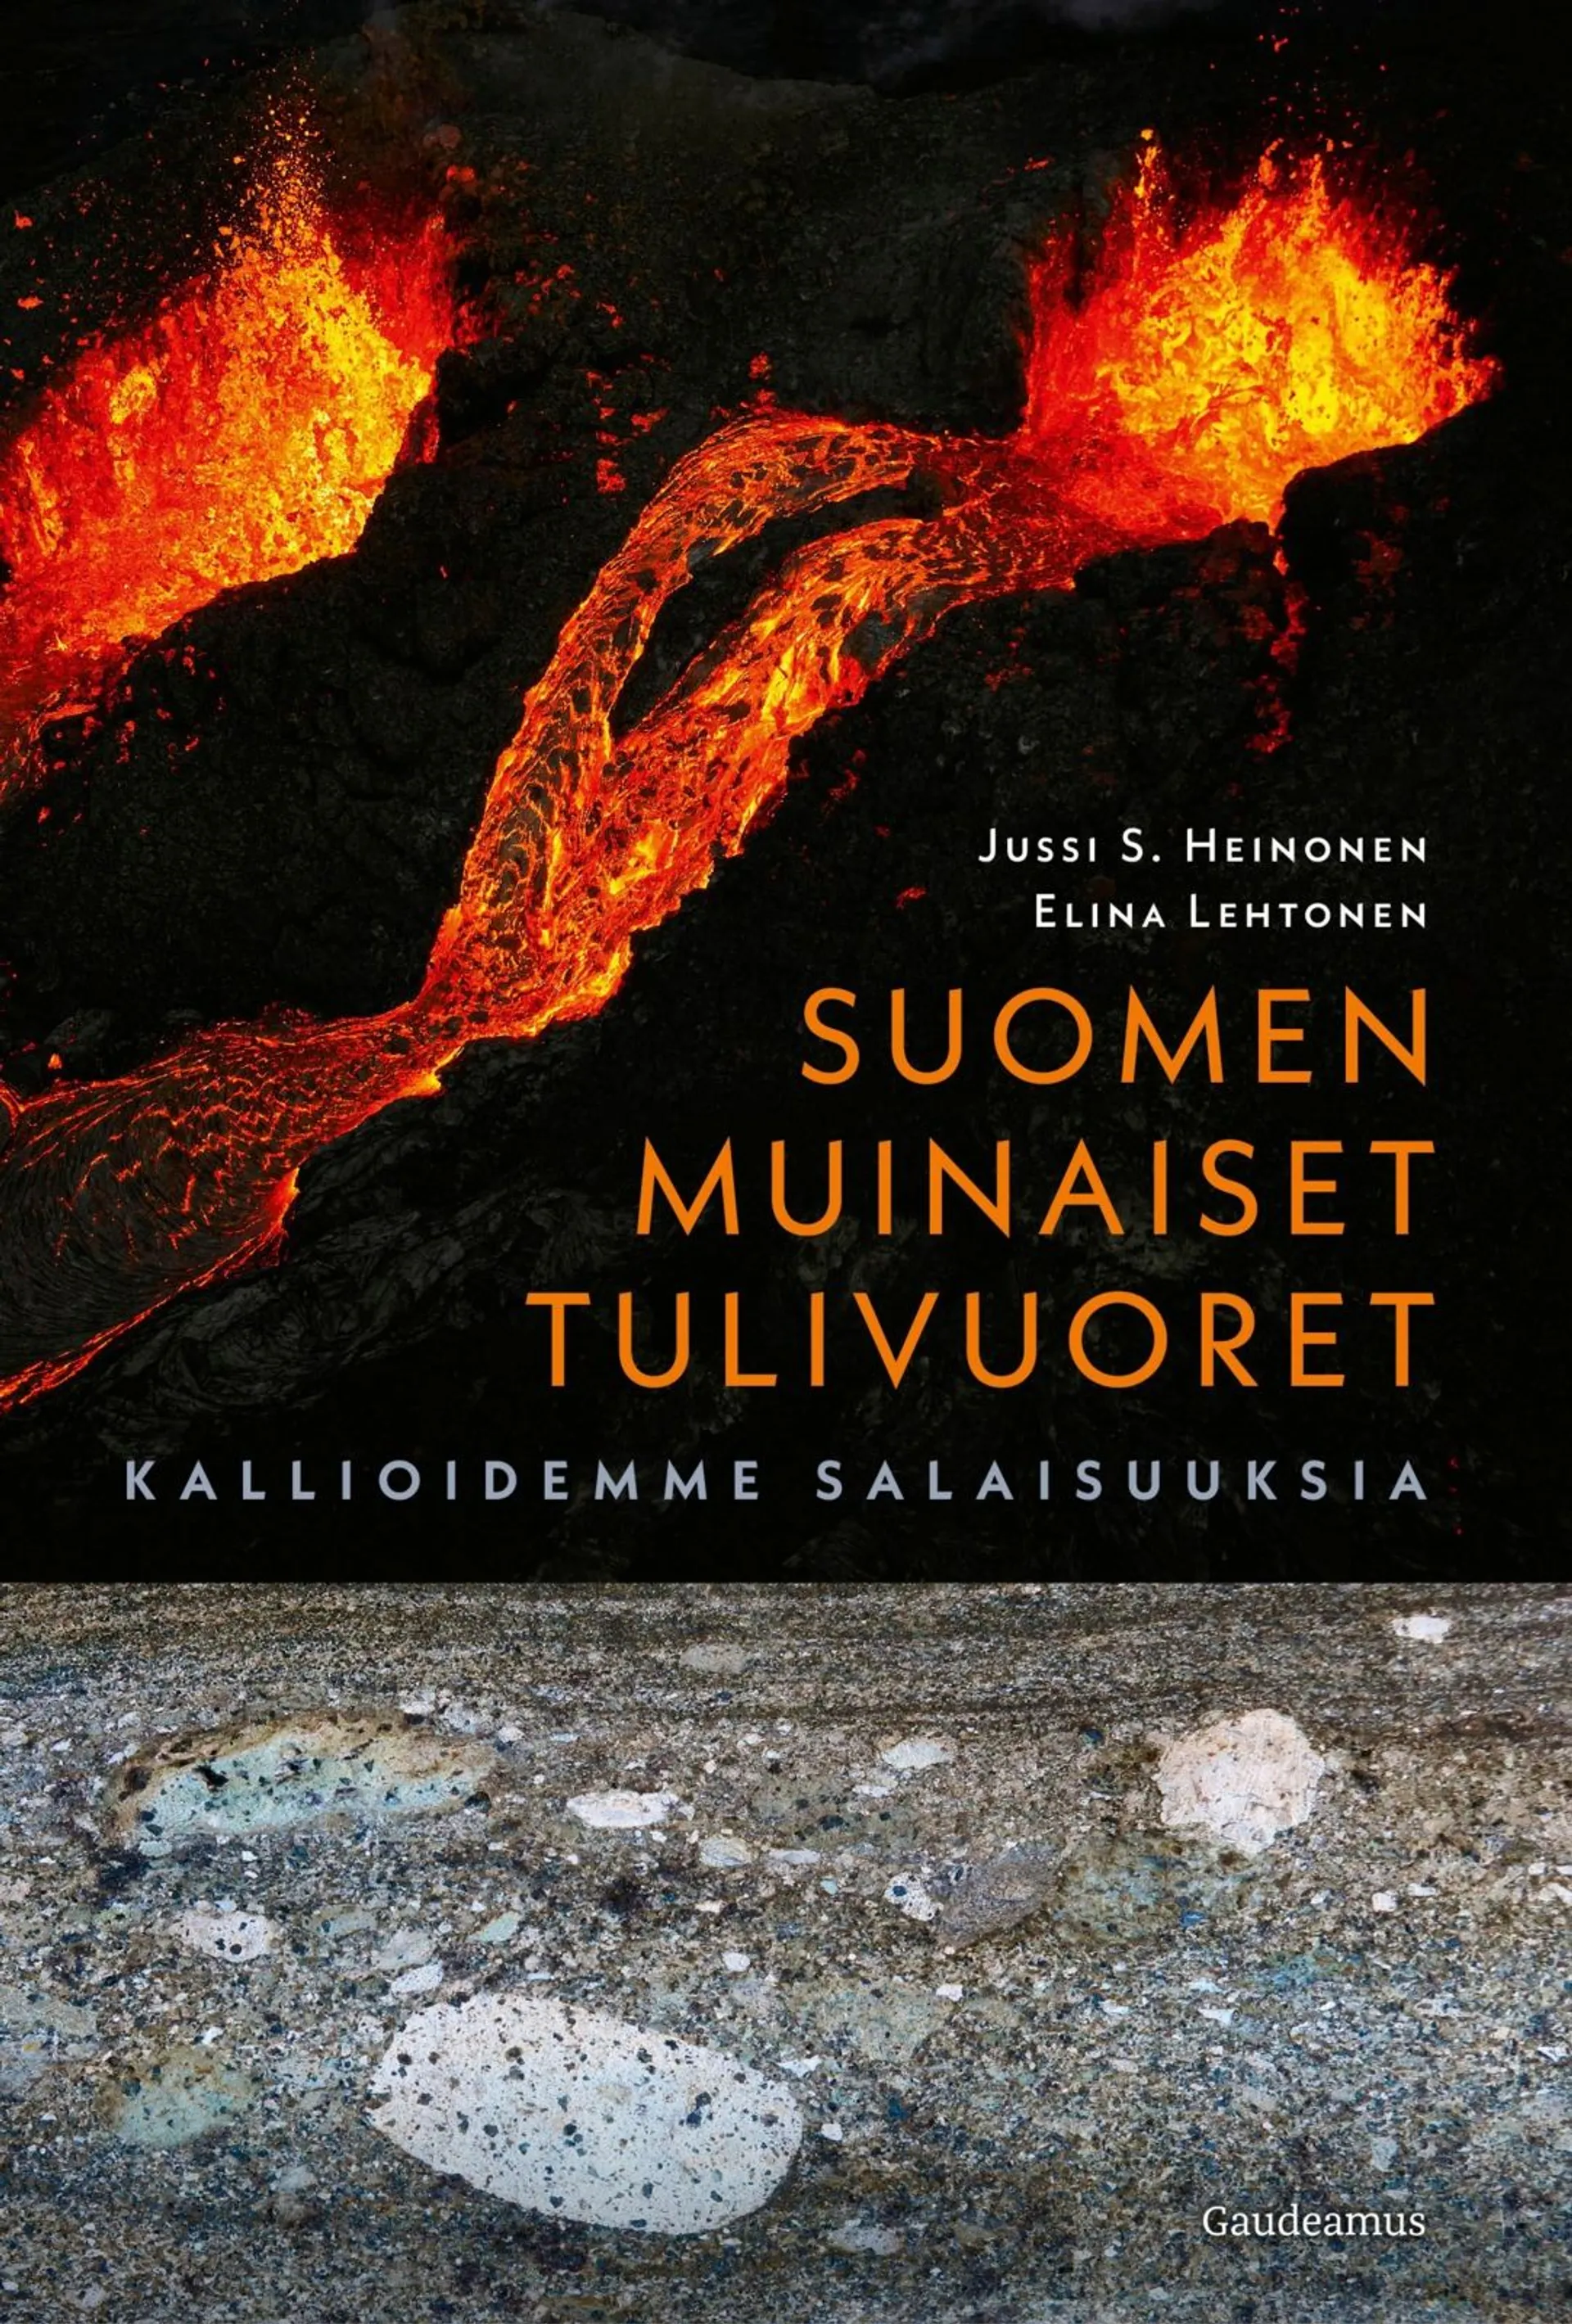 Heinonen, Suomen muinaiset tulivuoret - Kallioidemme salaisuuksia